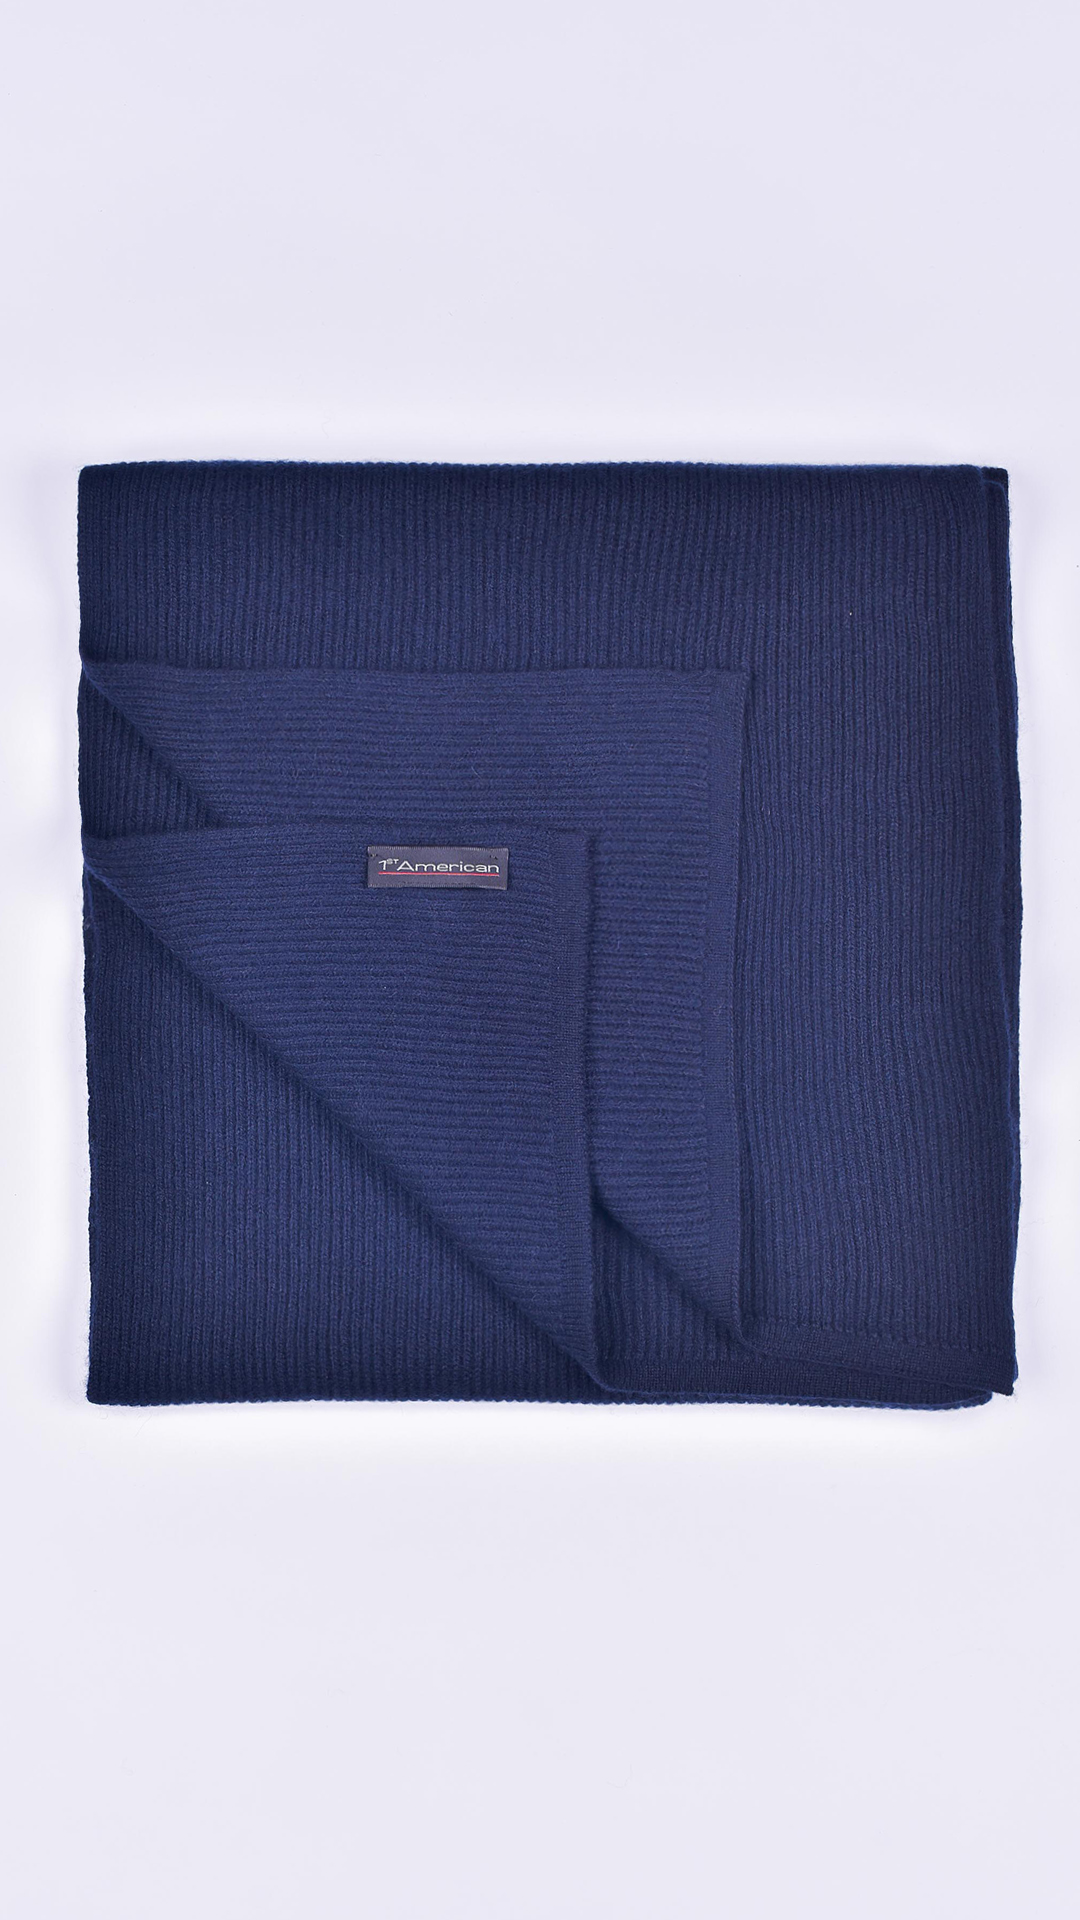 Juridario navy 1 1stAmerican sciarpa da uomo 100% puro cashmere Made in Italy a coste larghe - calda sciarpa invernale